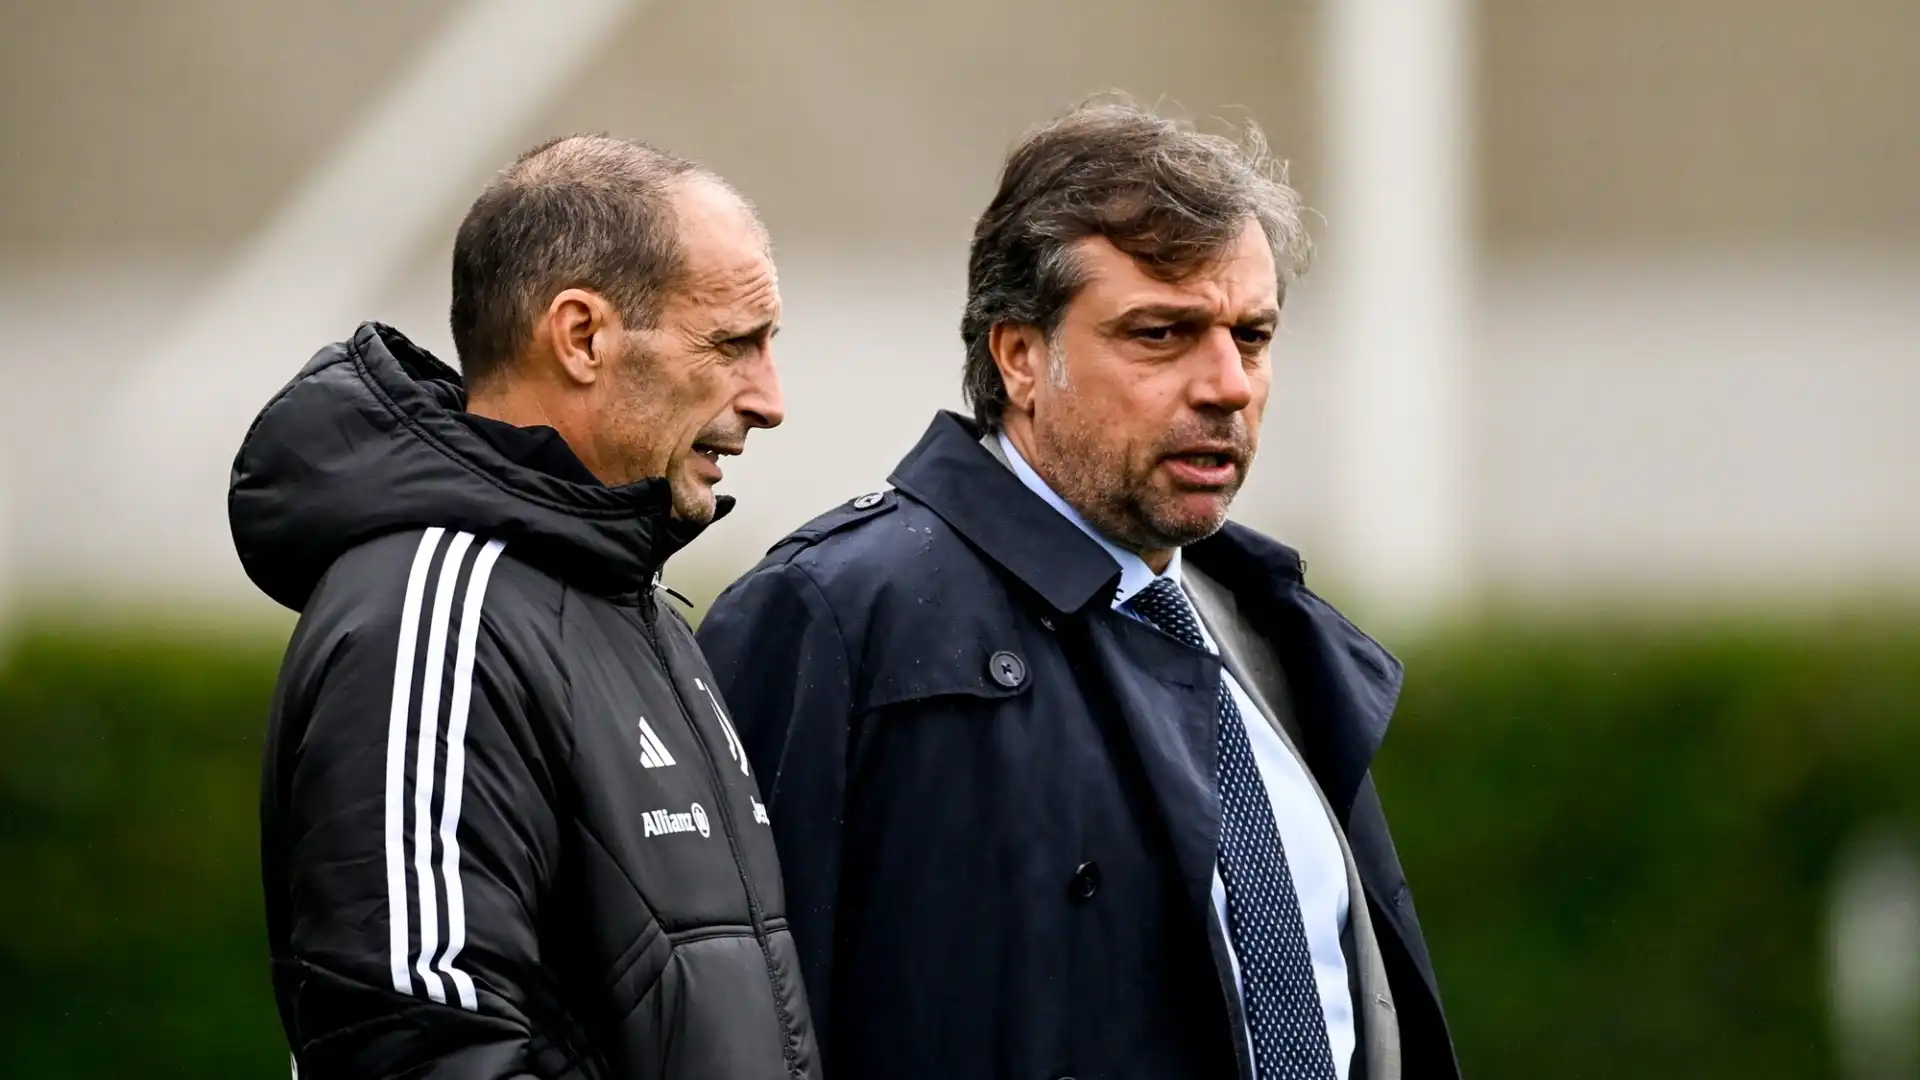 La Juventus sta considerando diversi rinforzi in vista del mercato estivo, anche per quanto riguarda le fasce